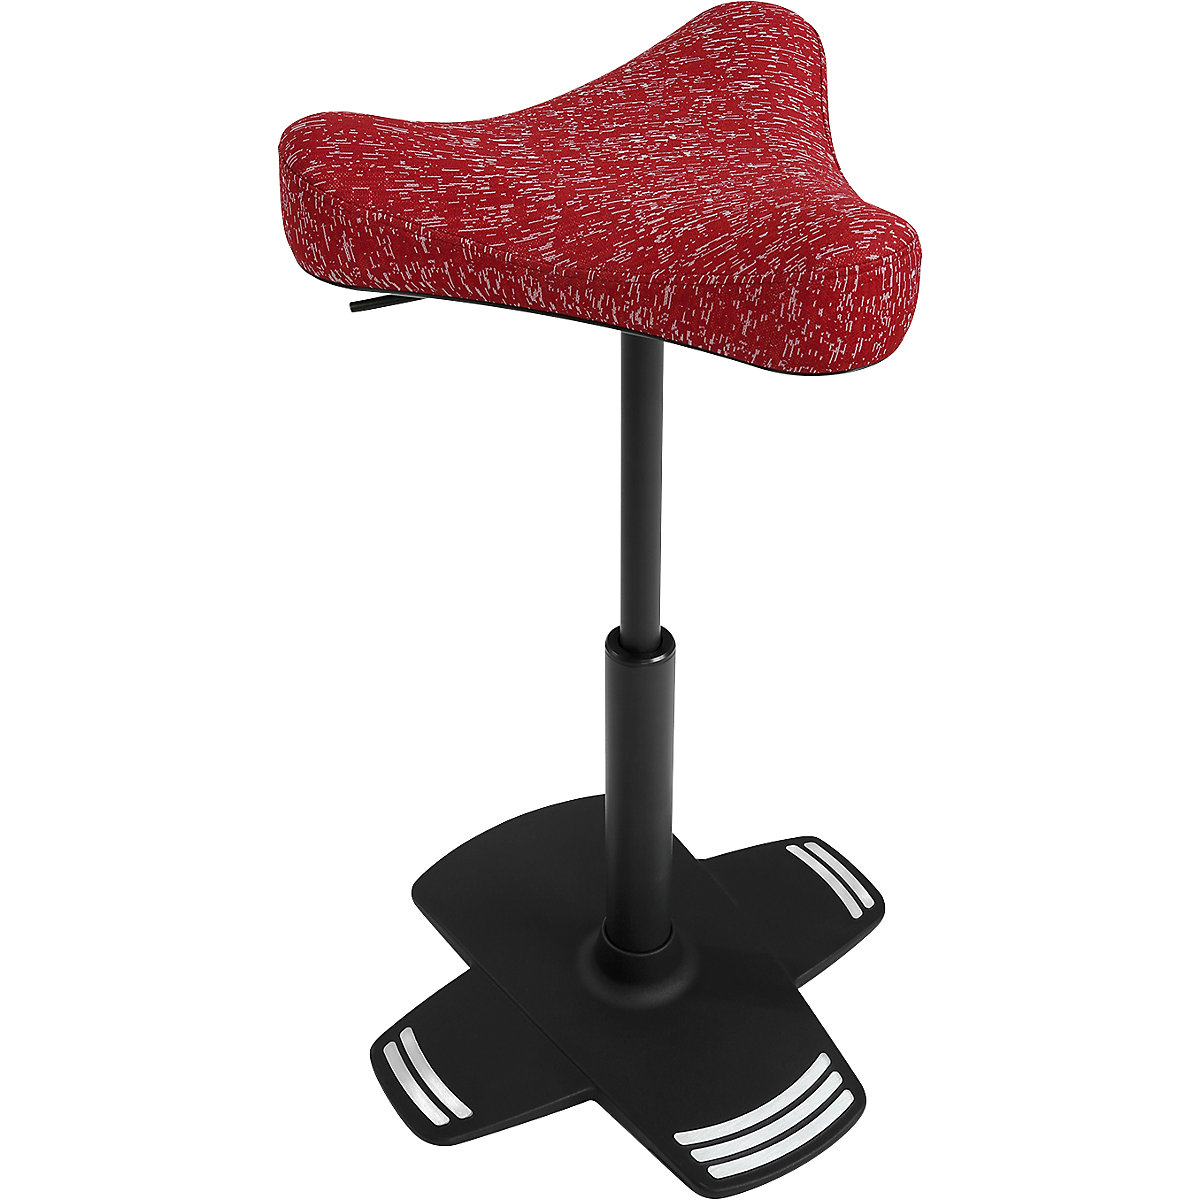 Scaun de sprijin SITNESS FALCON – Topstar, cu șezut în formă de șea, cu formă ergonomică, tapițerie roșie-5